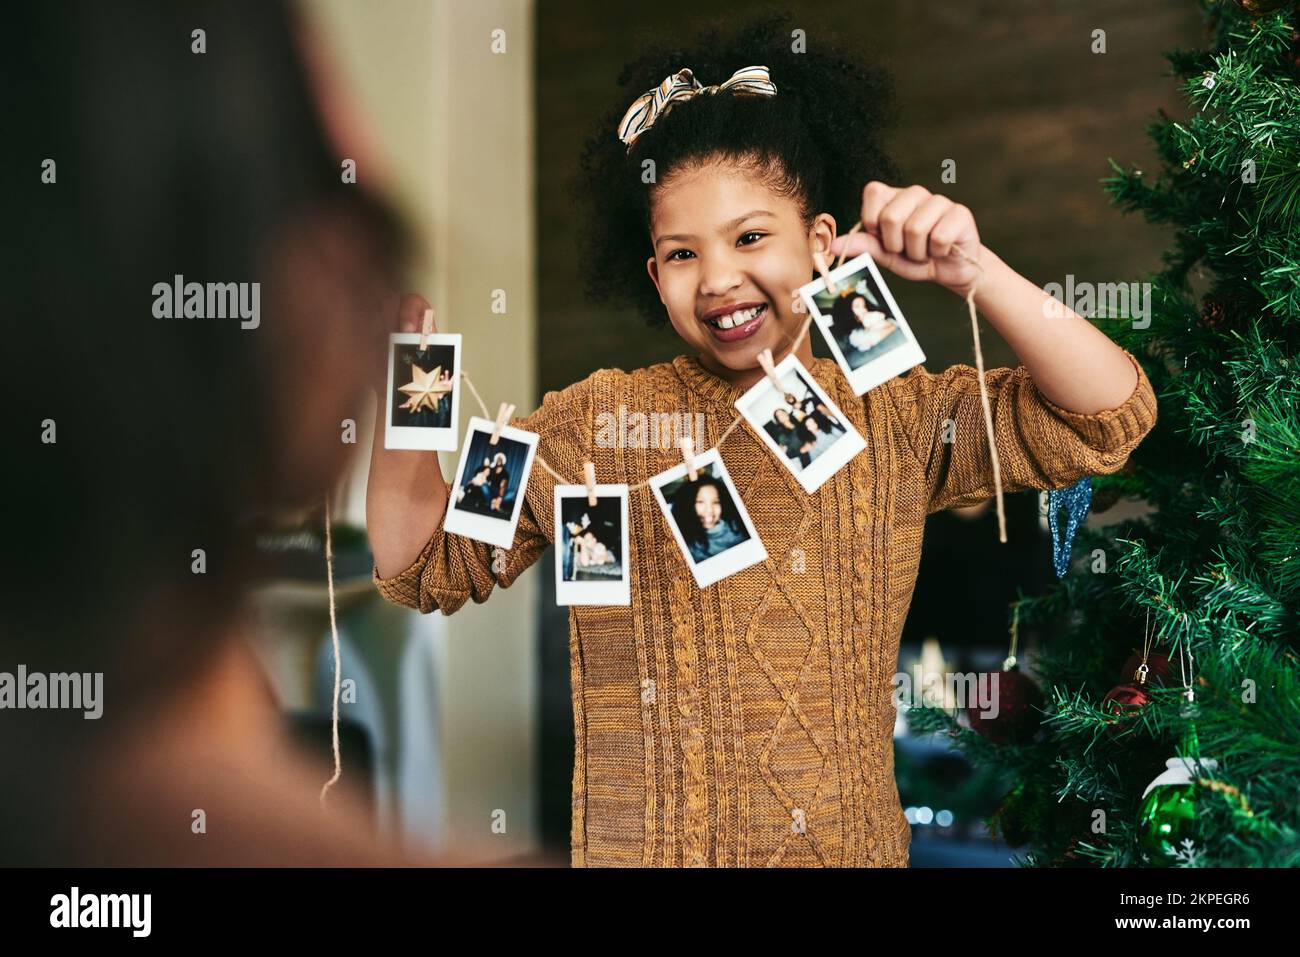 Mädchen, Fotoreihe oder am weihnachtsbaum hängen, Familienheim oder Weihnachtsdekoration. Kind, Bilder oder Innendesign für Feiern Stockfoto